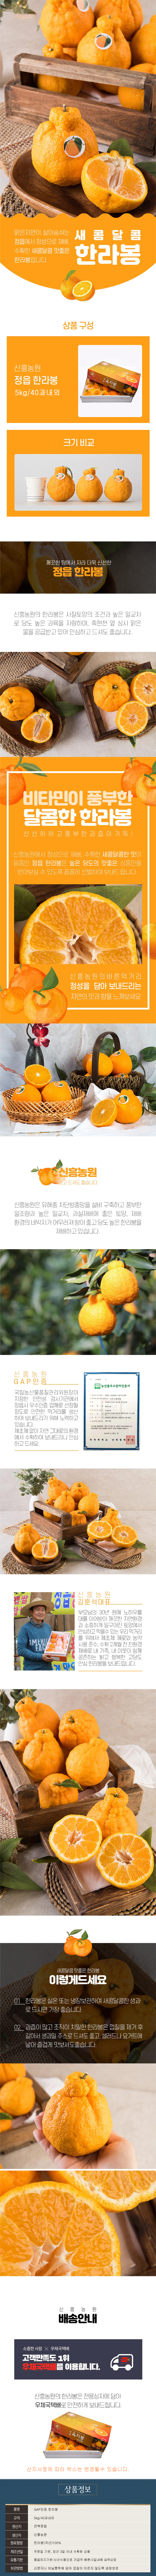 jeonguibhanrabong_page_5kg40.jpg